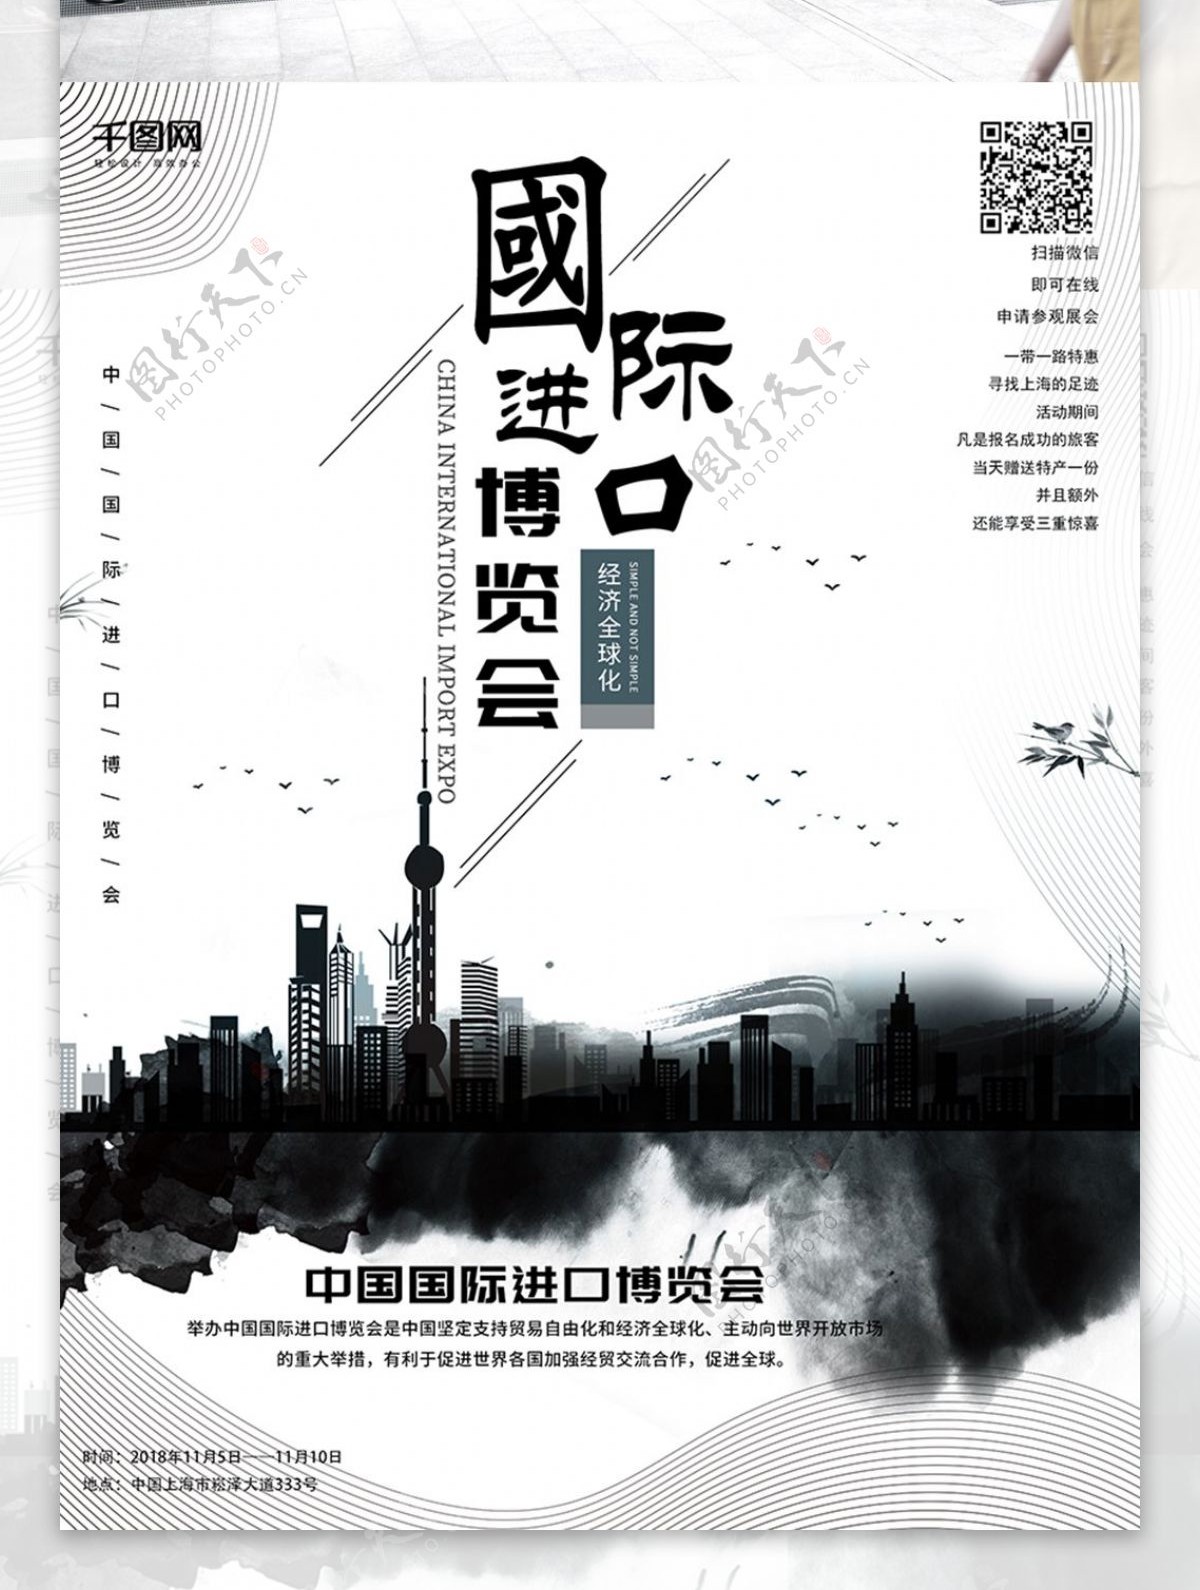 原创简约中国风中国国际进口博览会海报